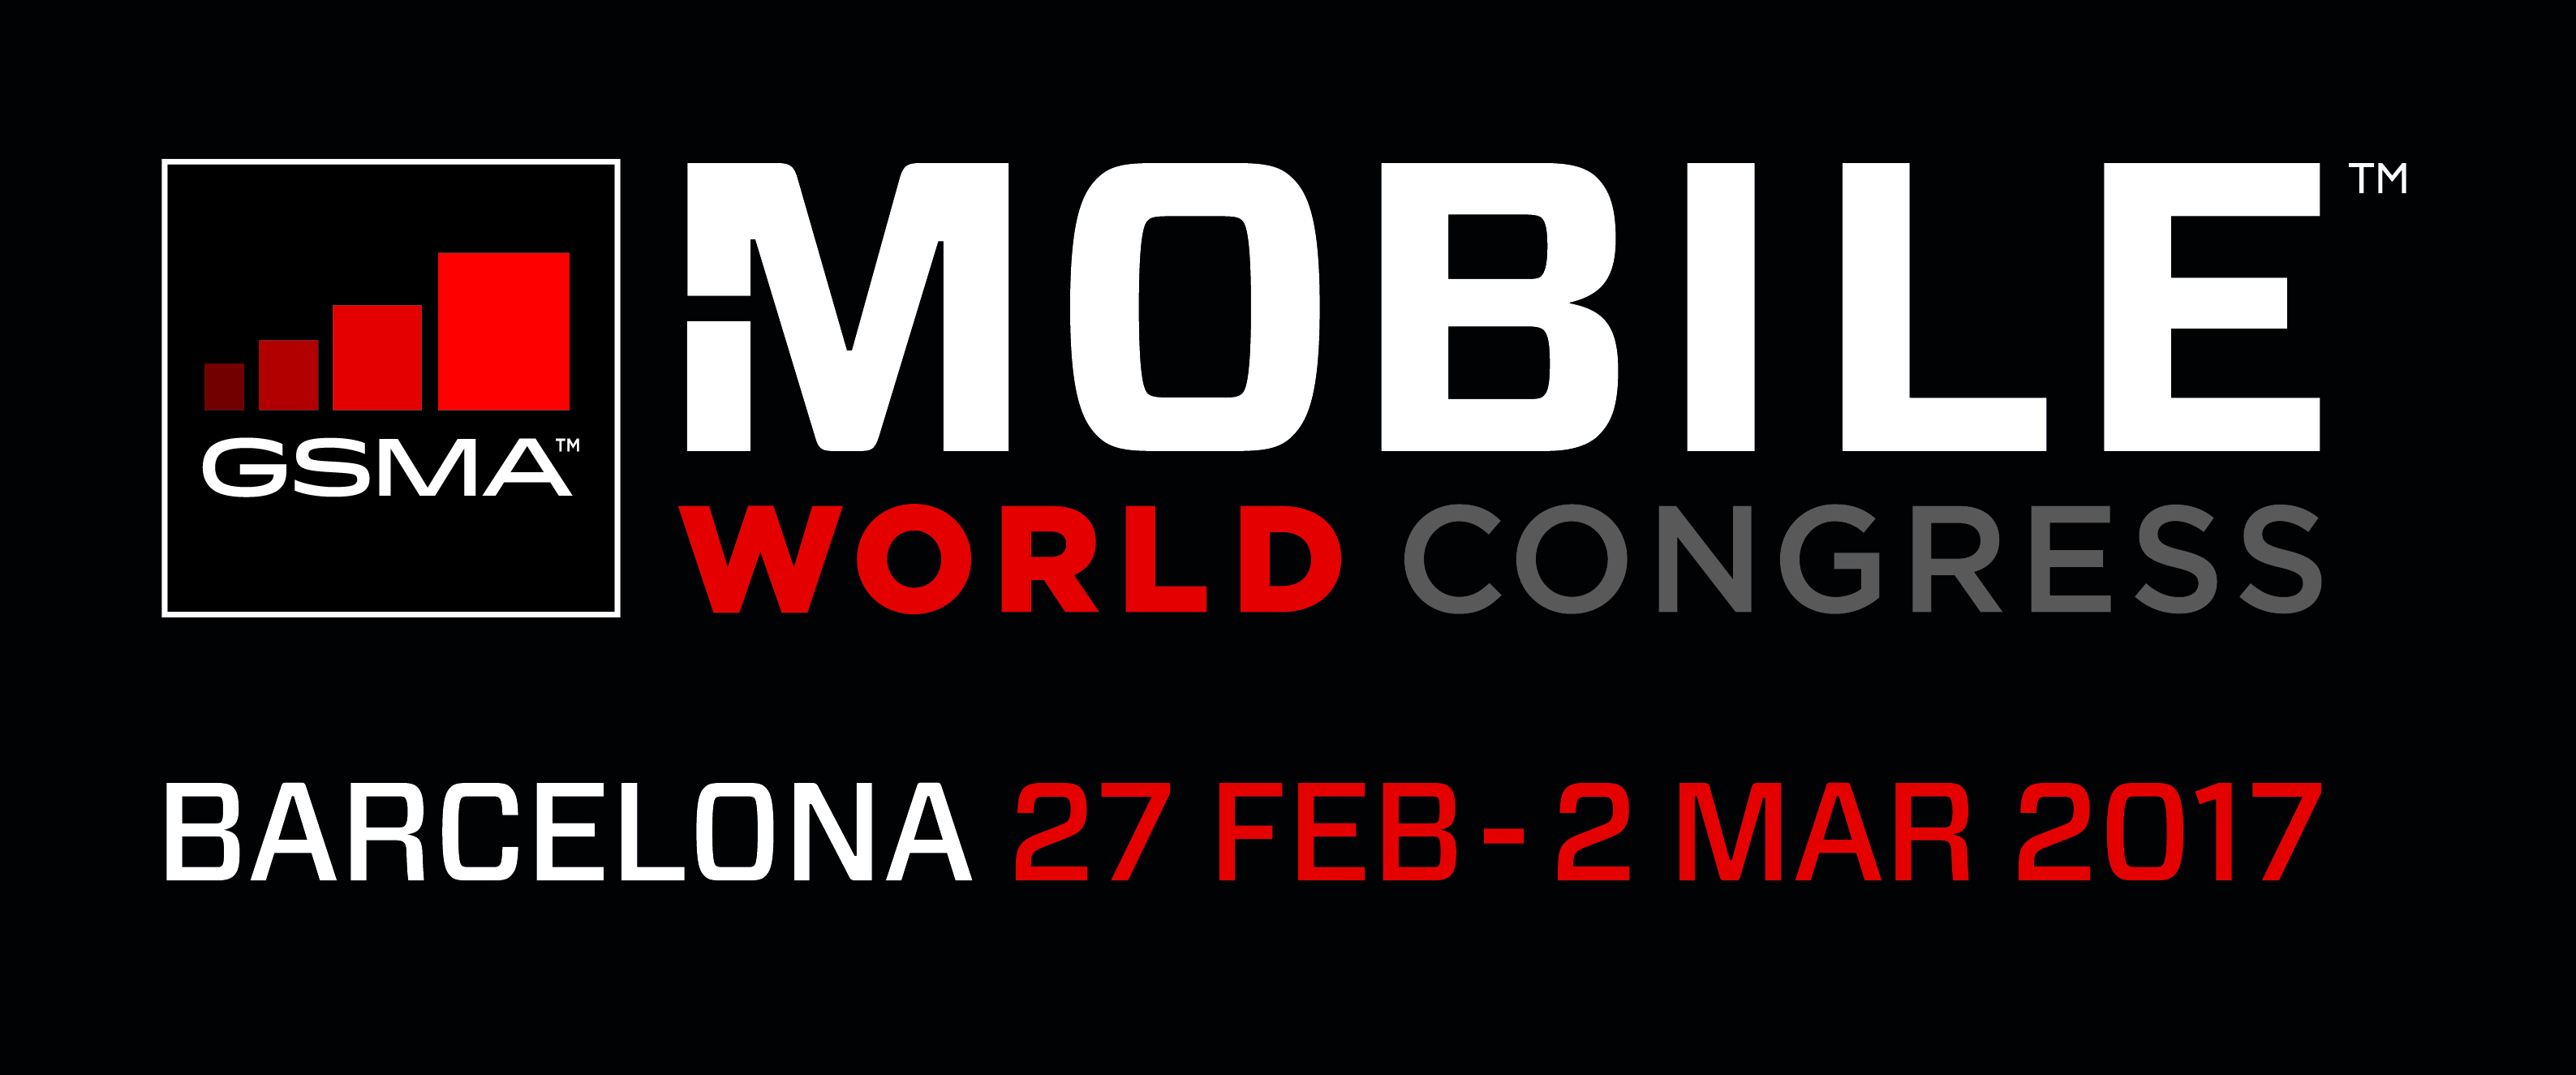 Mobile World Congress 2017 logo 